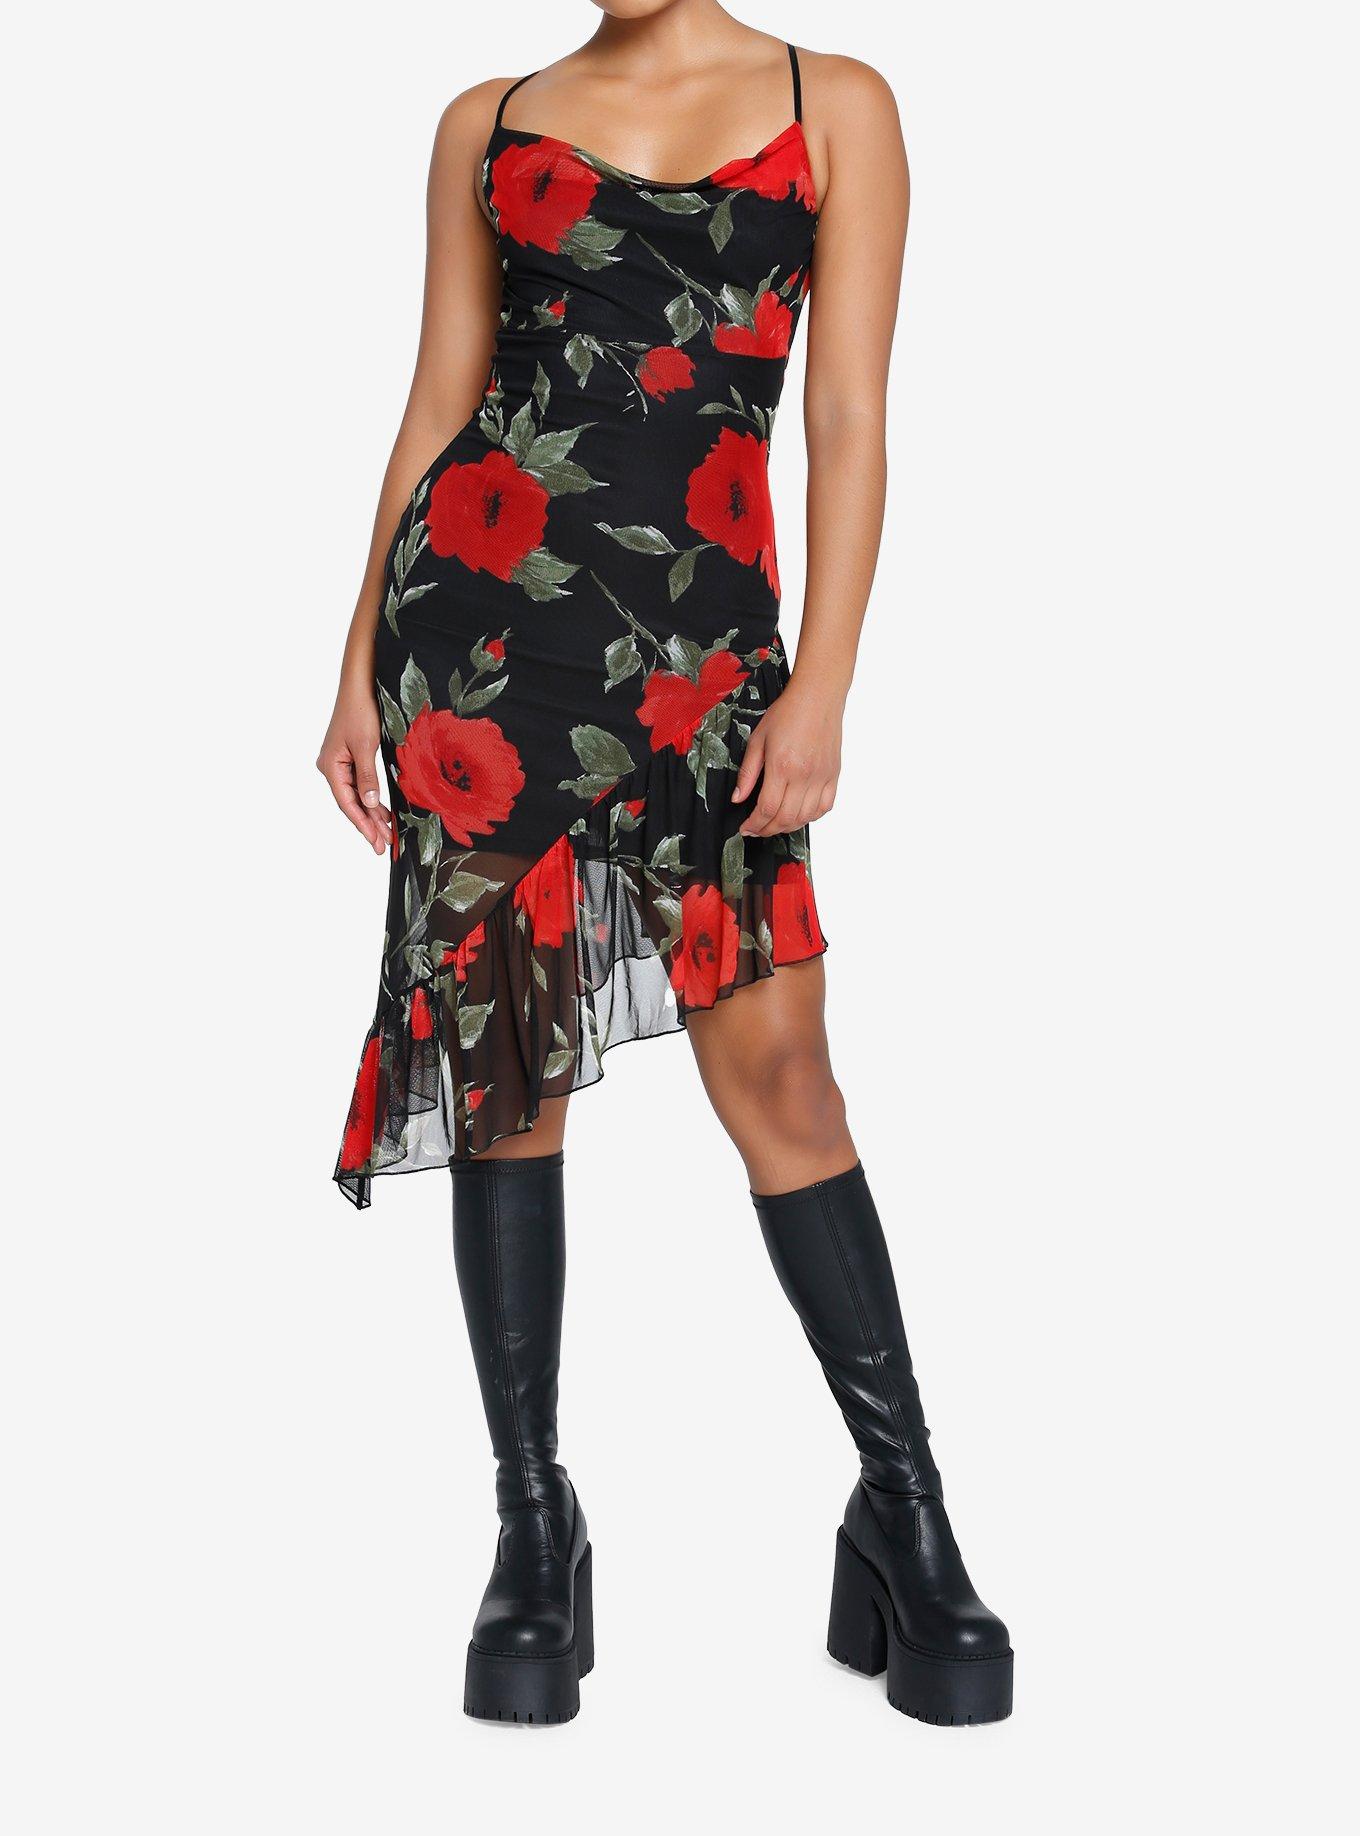 Red Rose Asymmetrical Slip Dress, BLACK, alternate